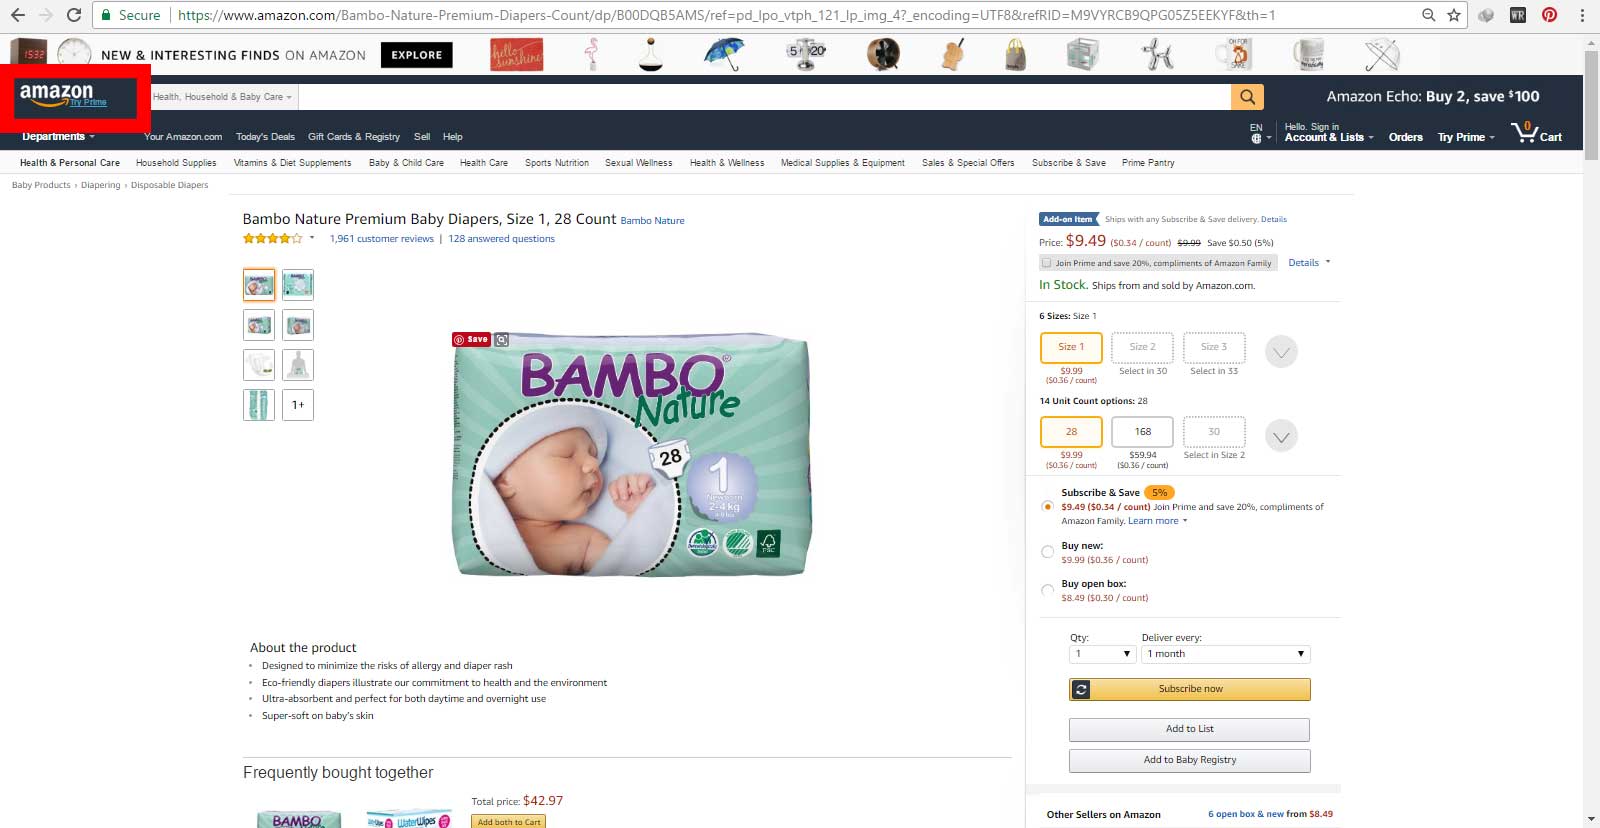 فروش پوشک بچه بامبو ساخت کشور دانمارک در سایت اینترنتی Amazon